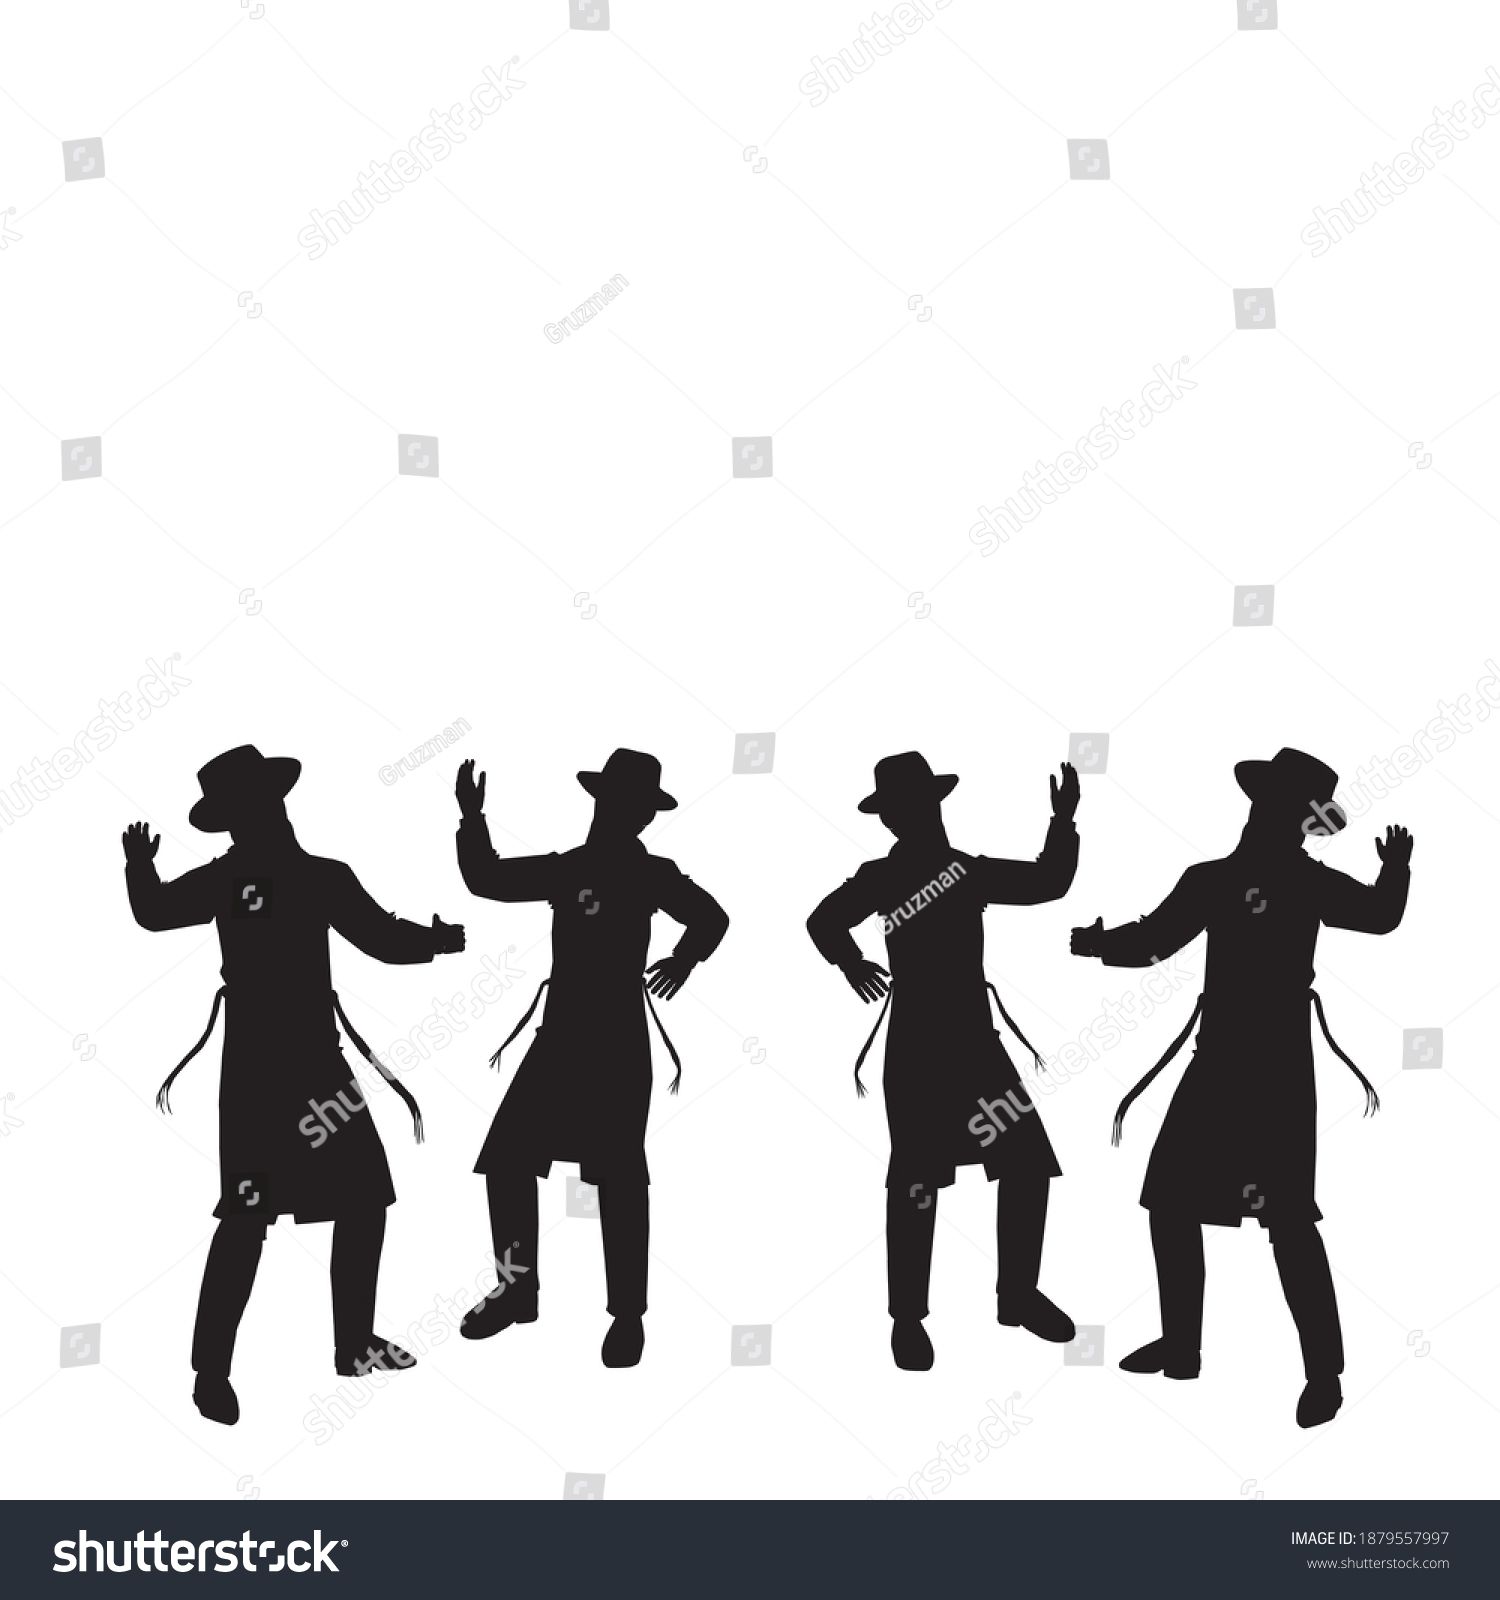 ציור של חסידים רוקדים צללית צלליות וקטורי שחור ריקוד חסידי בווקטורי -1879557997.jpg